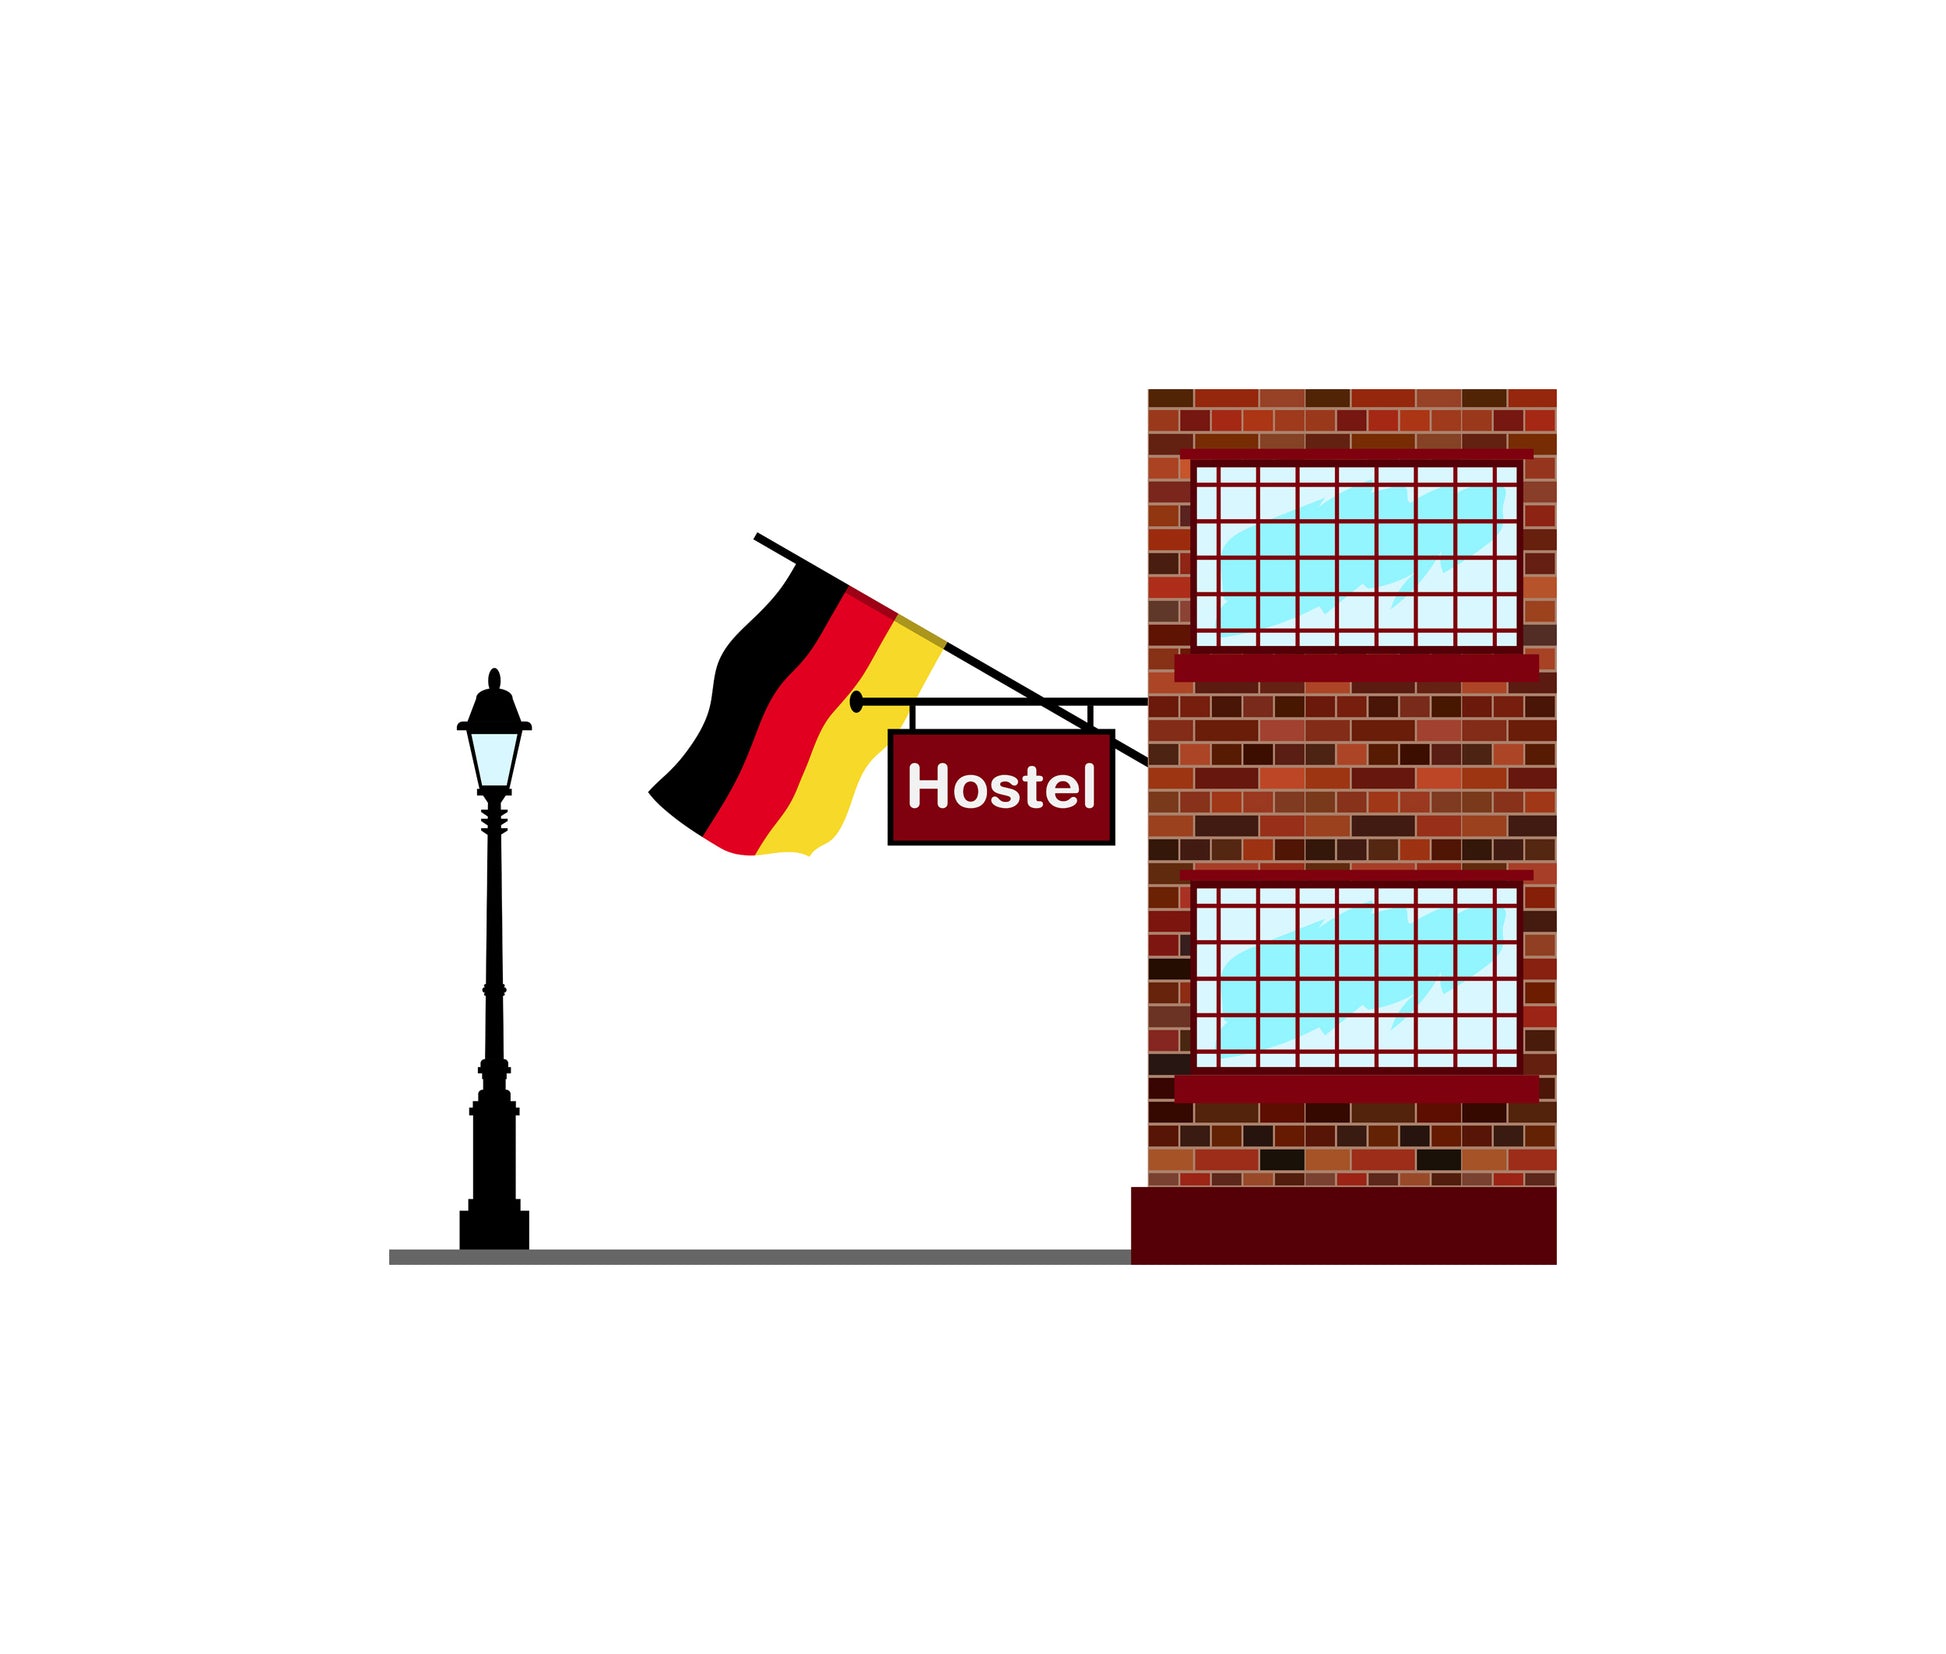 Germany Hostels Hotel Vector Illustration